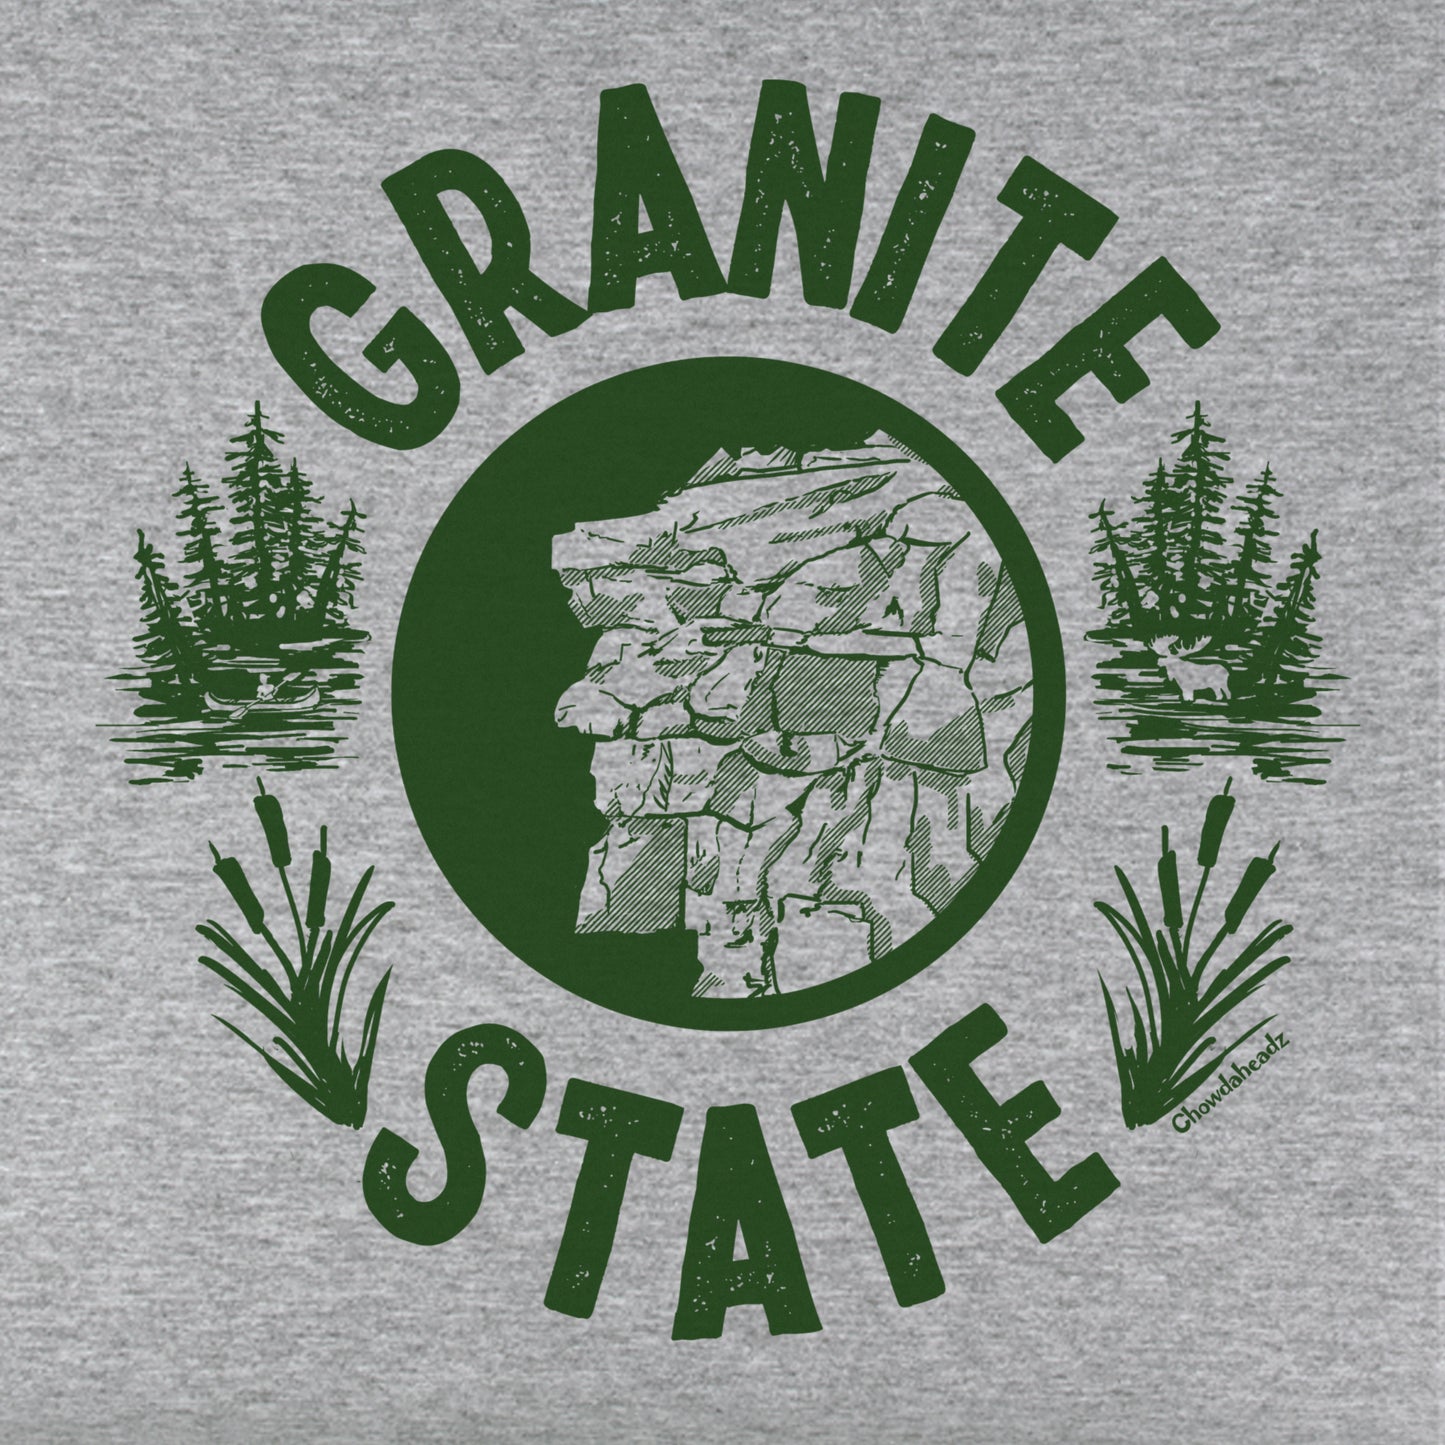 Granite State Youth Hoodie - Chowdaheadz